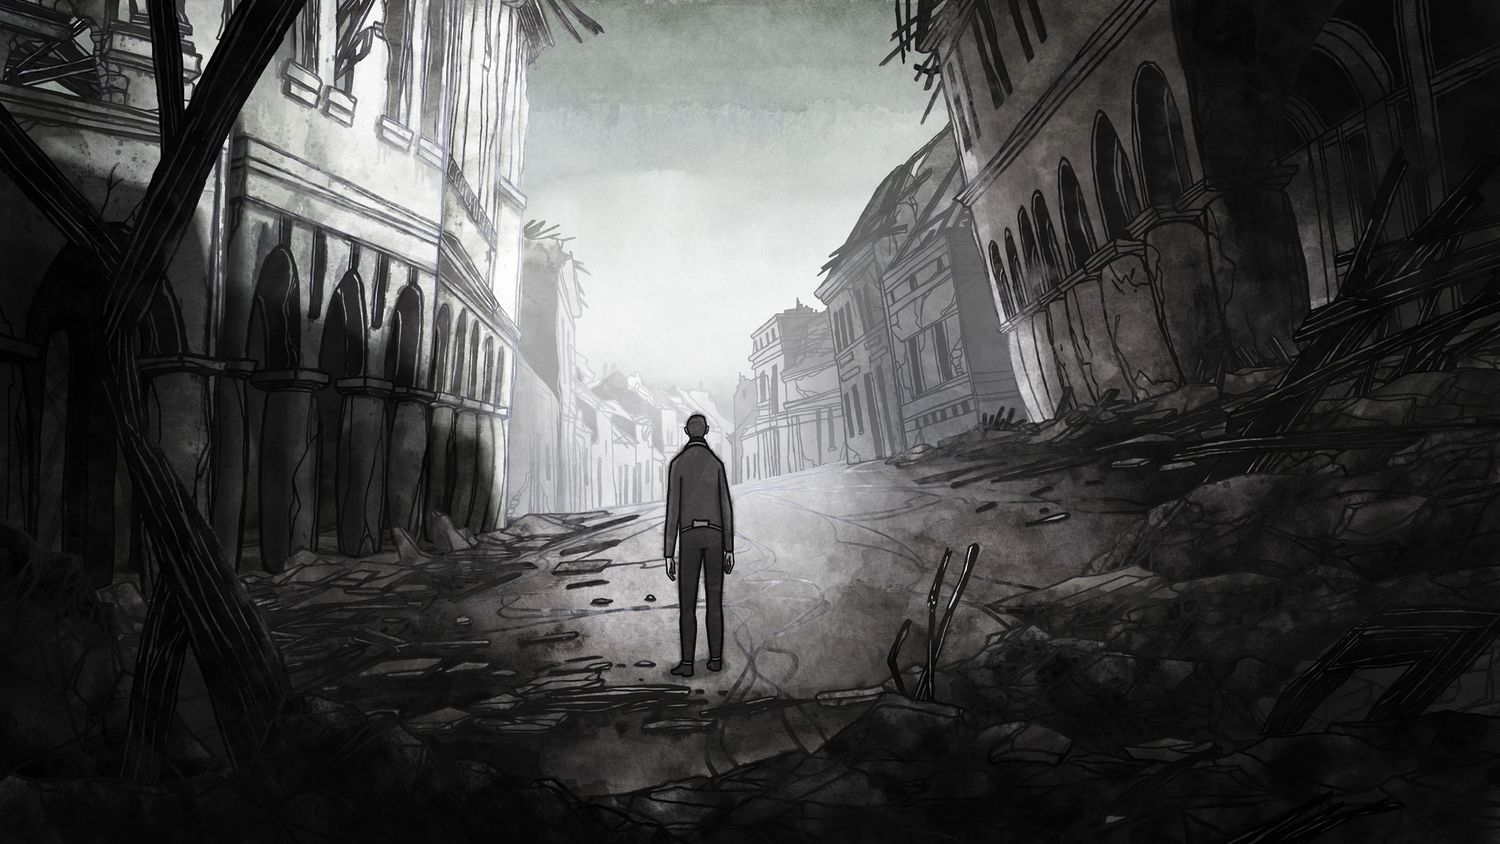 Zecihnung aus dem Film zeigt eine verlorene Figur von hinten inmitten einer zerstörten Strasse.